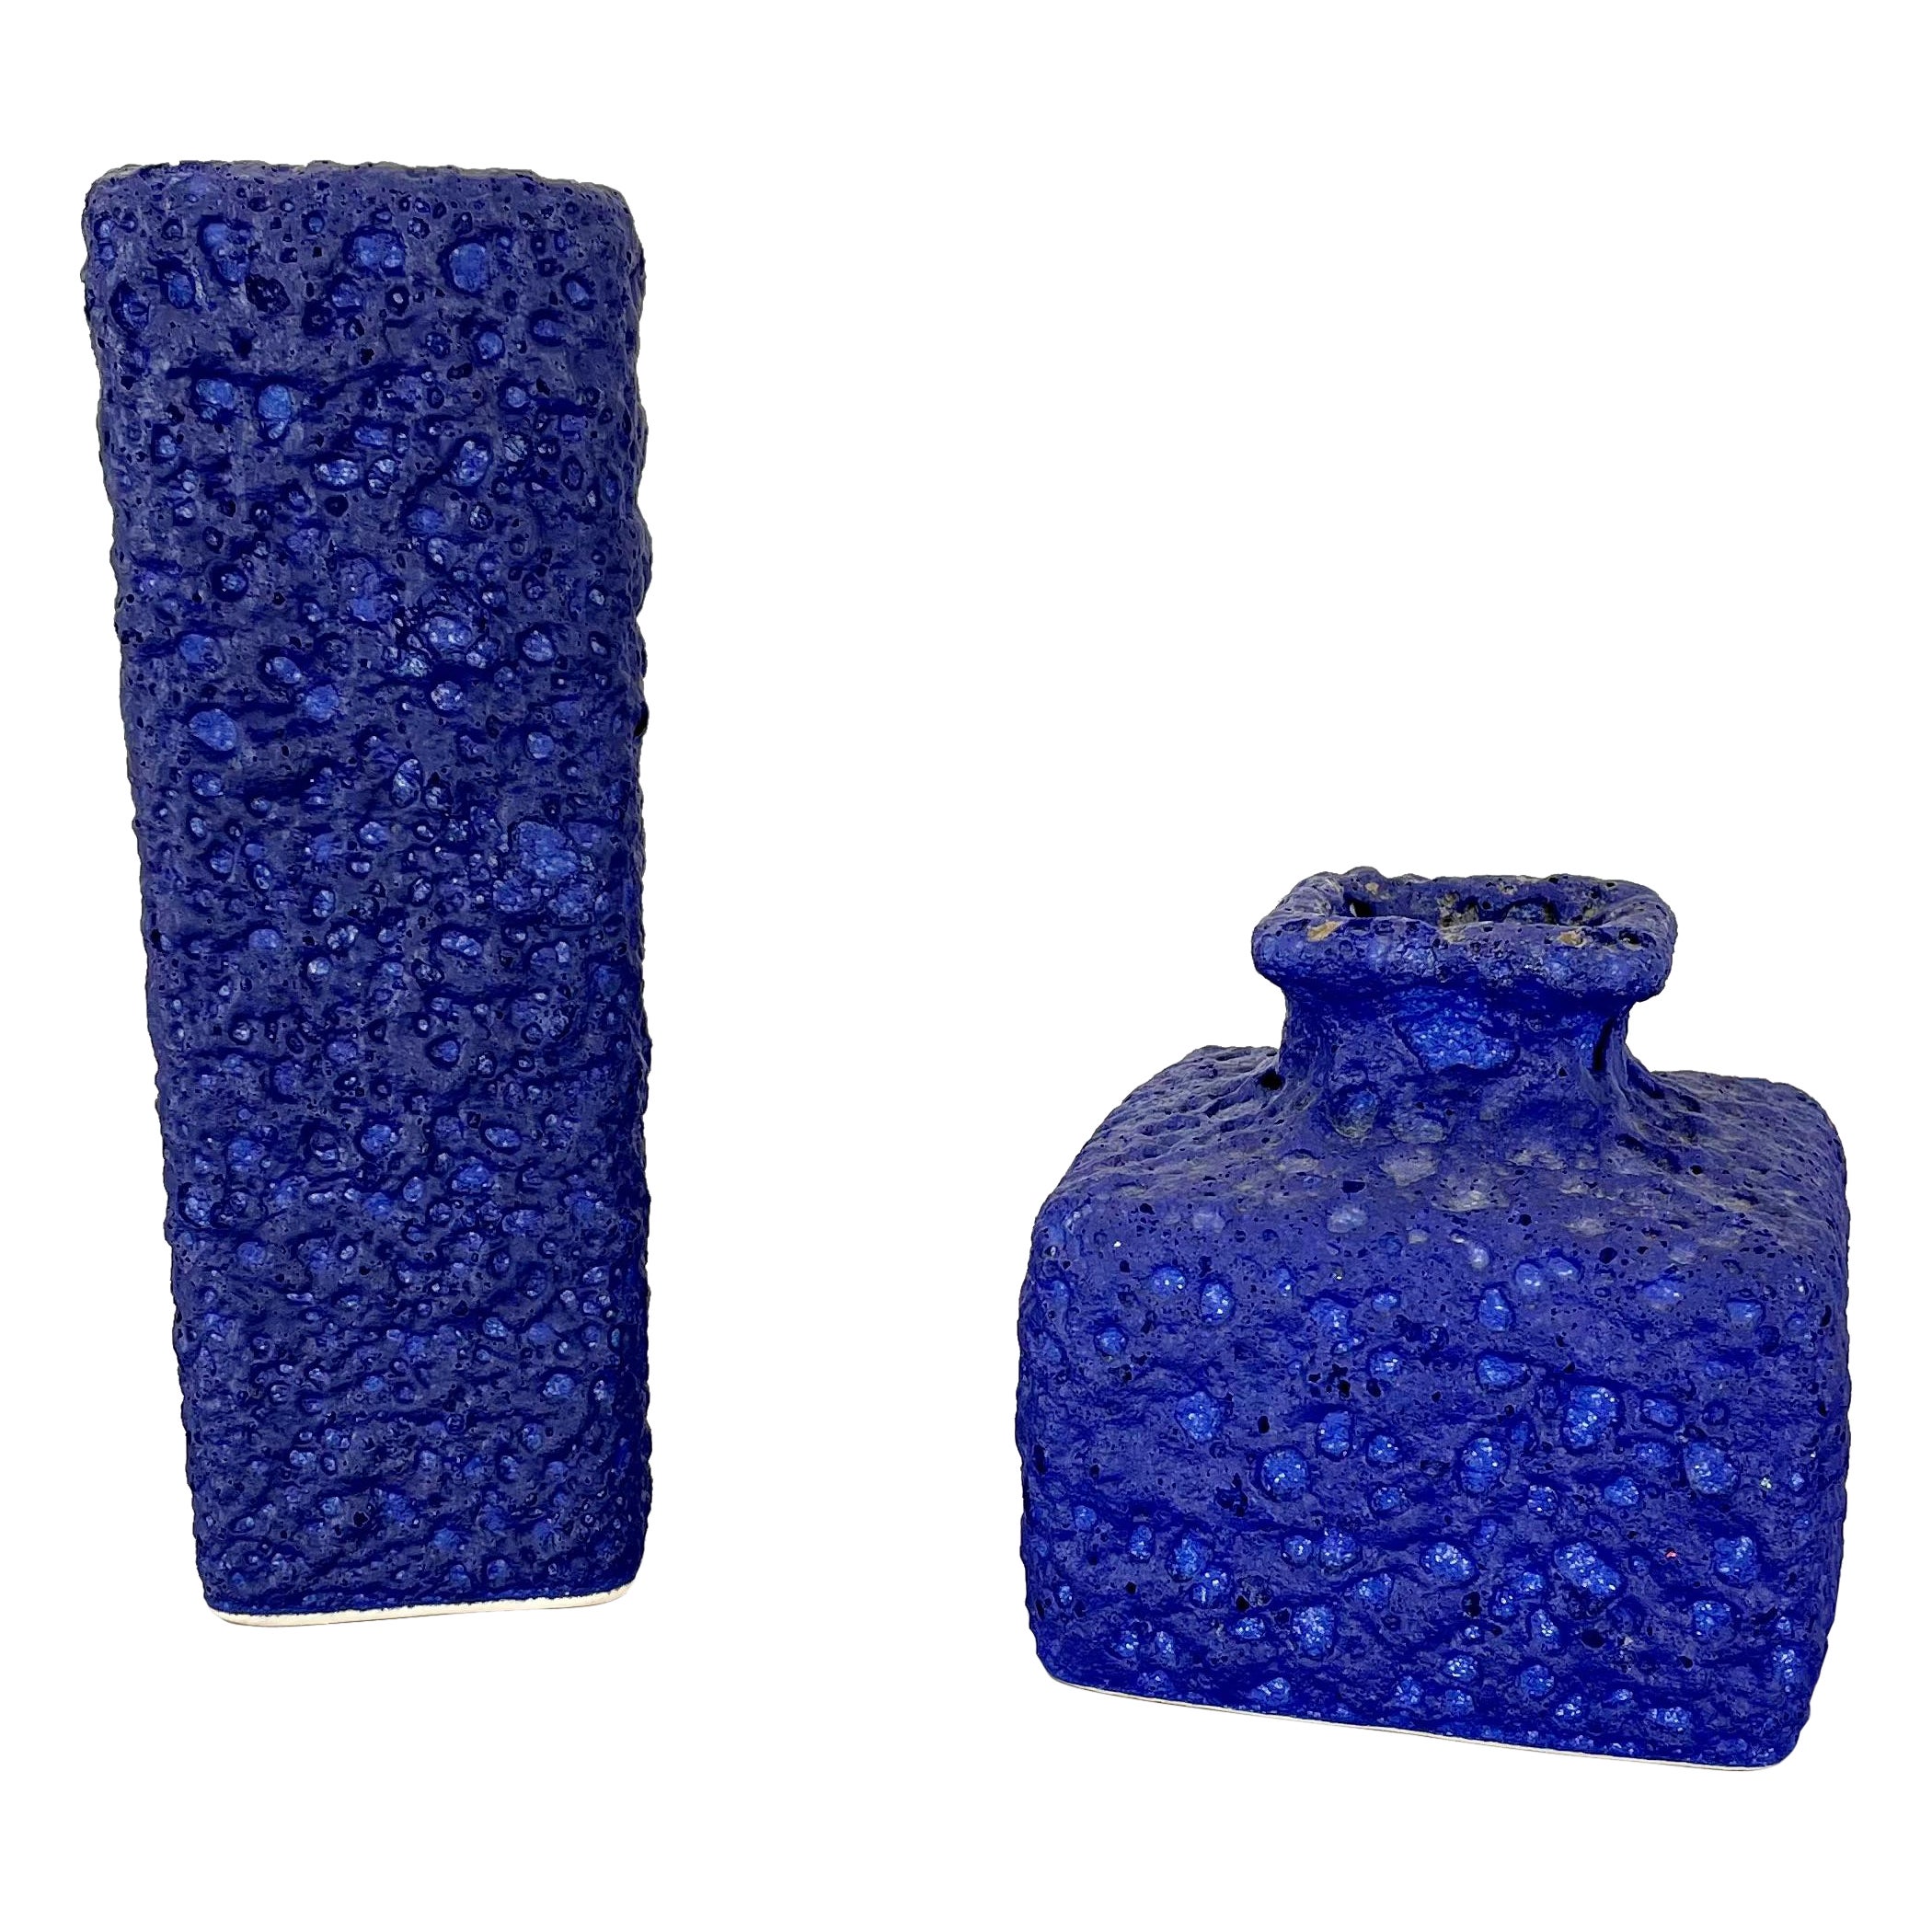 Satz von 2 abstrakten, farbenfrohen blauen Vasen aus Keramik von Silberdistel, W. Germany, 1970er Jahre